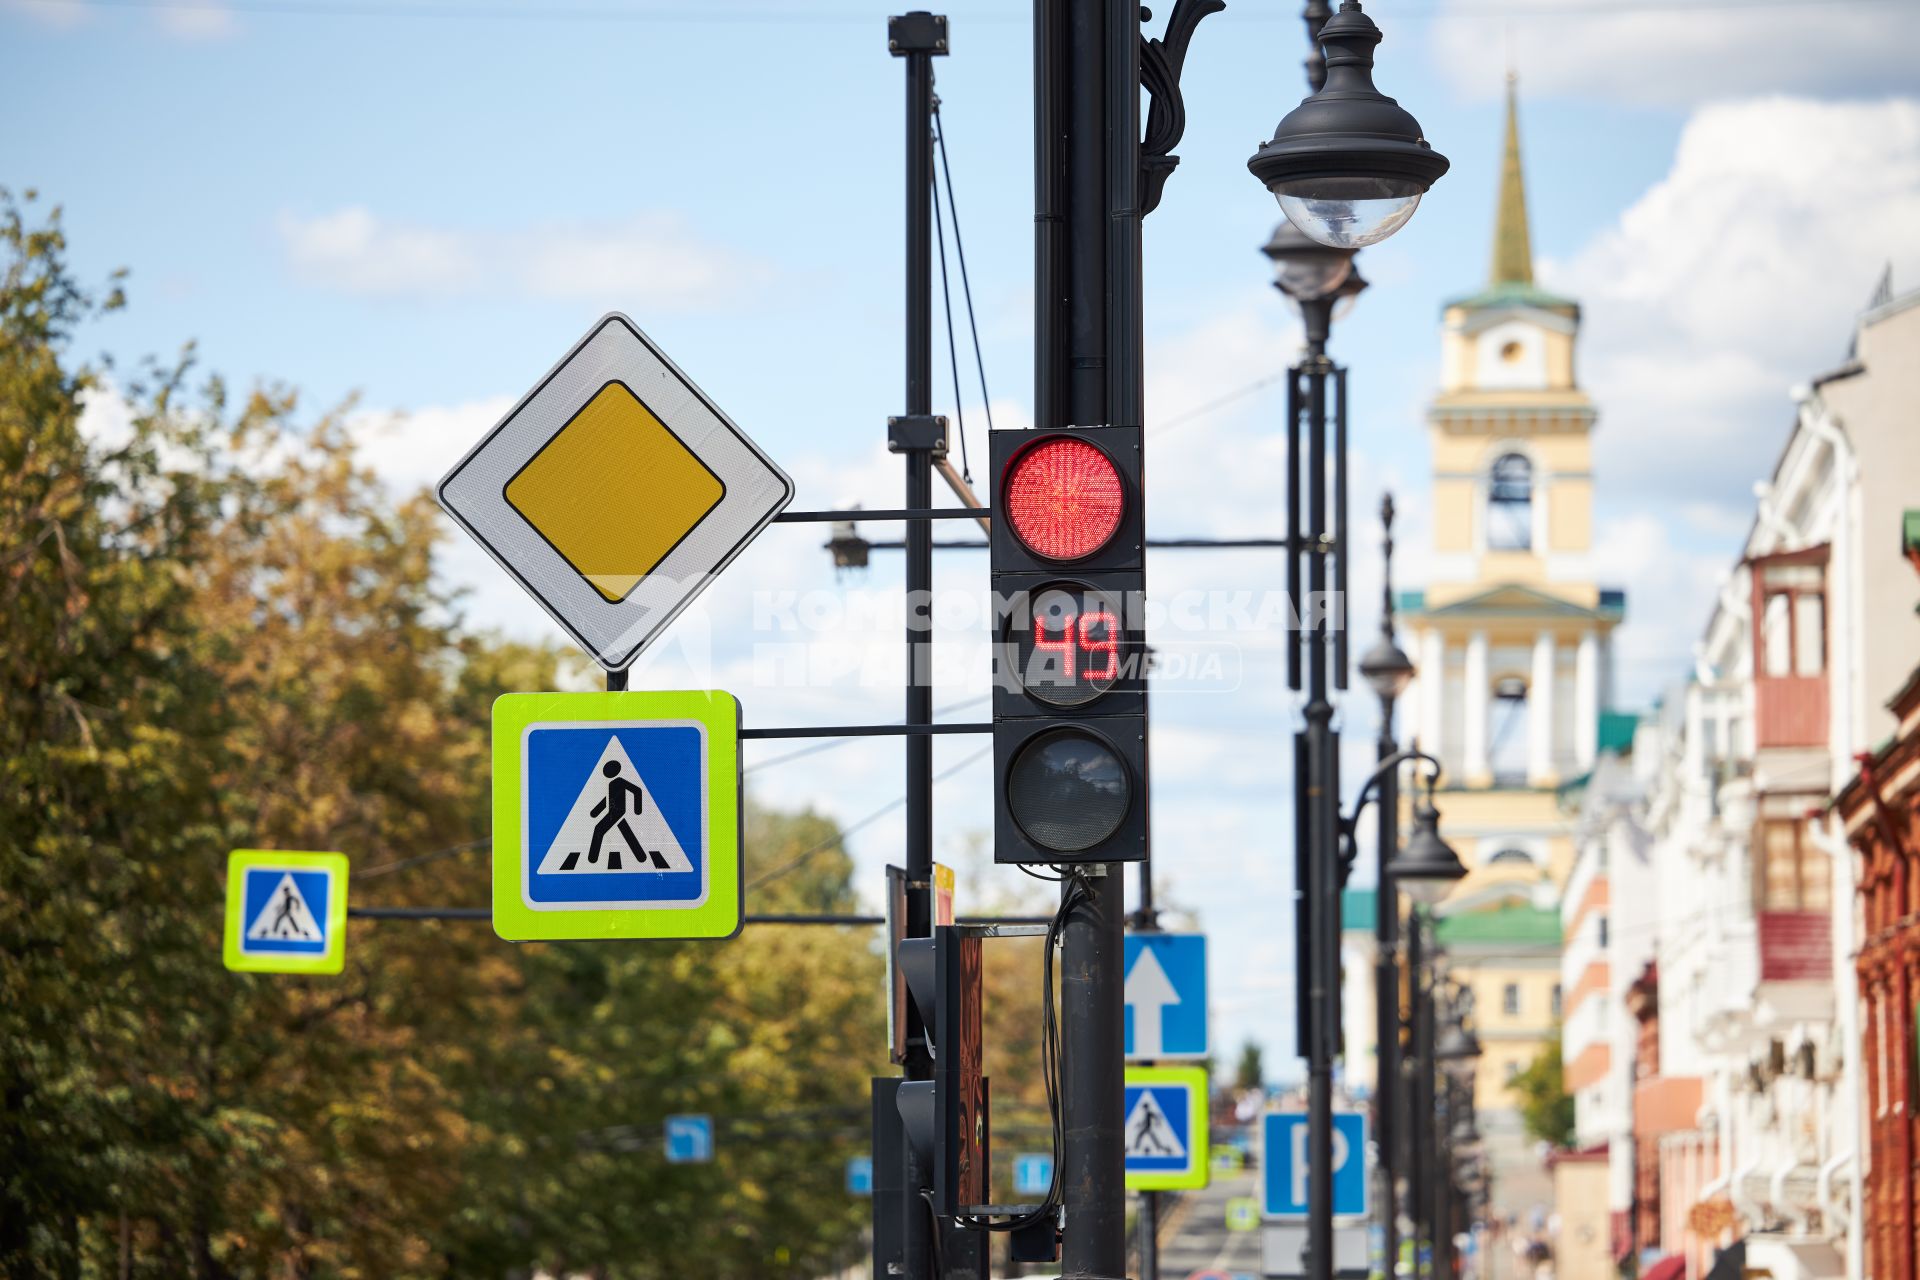 Пермь. Светофор и дорожные знаки на одной из улиц города.